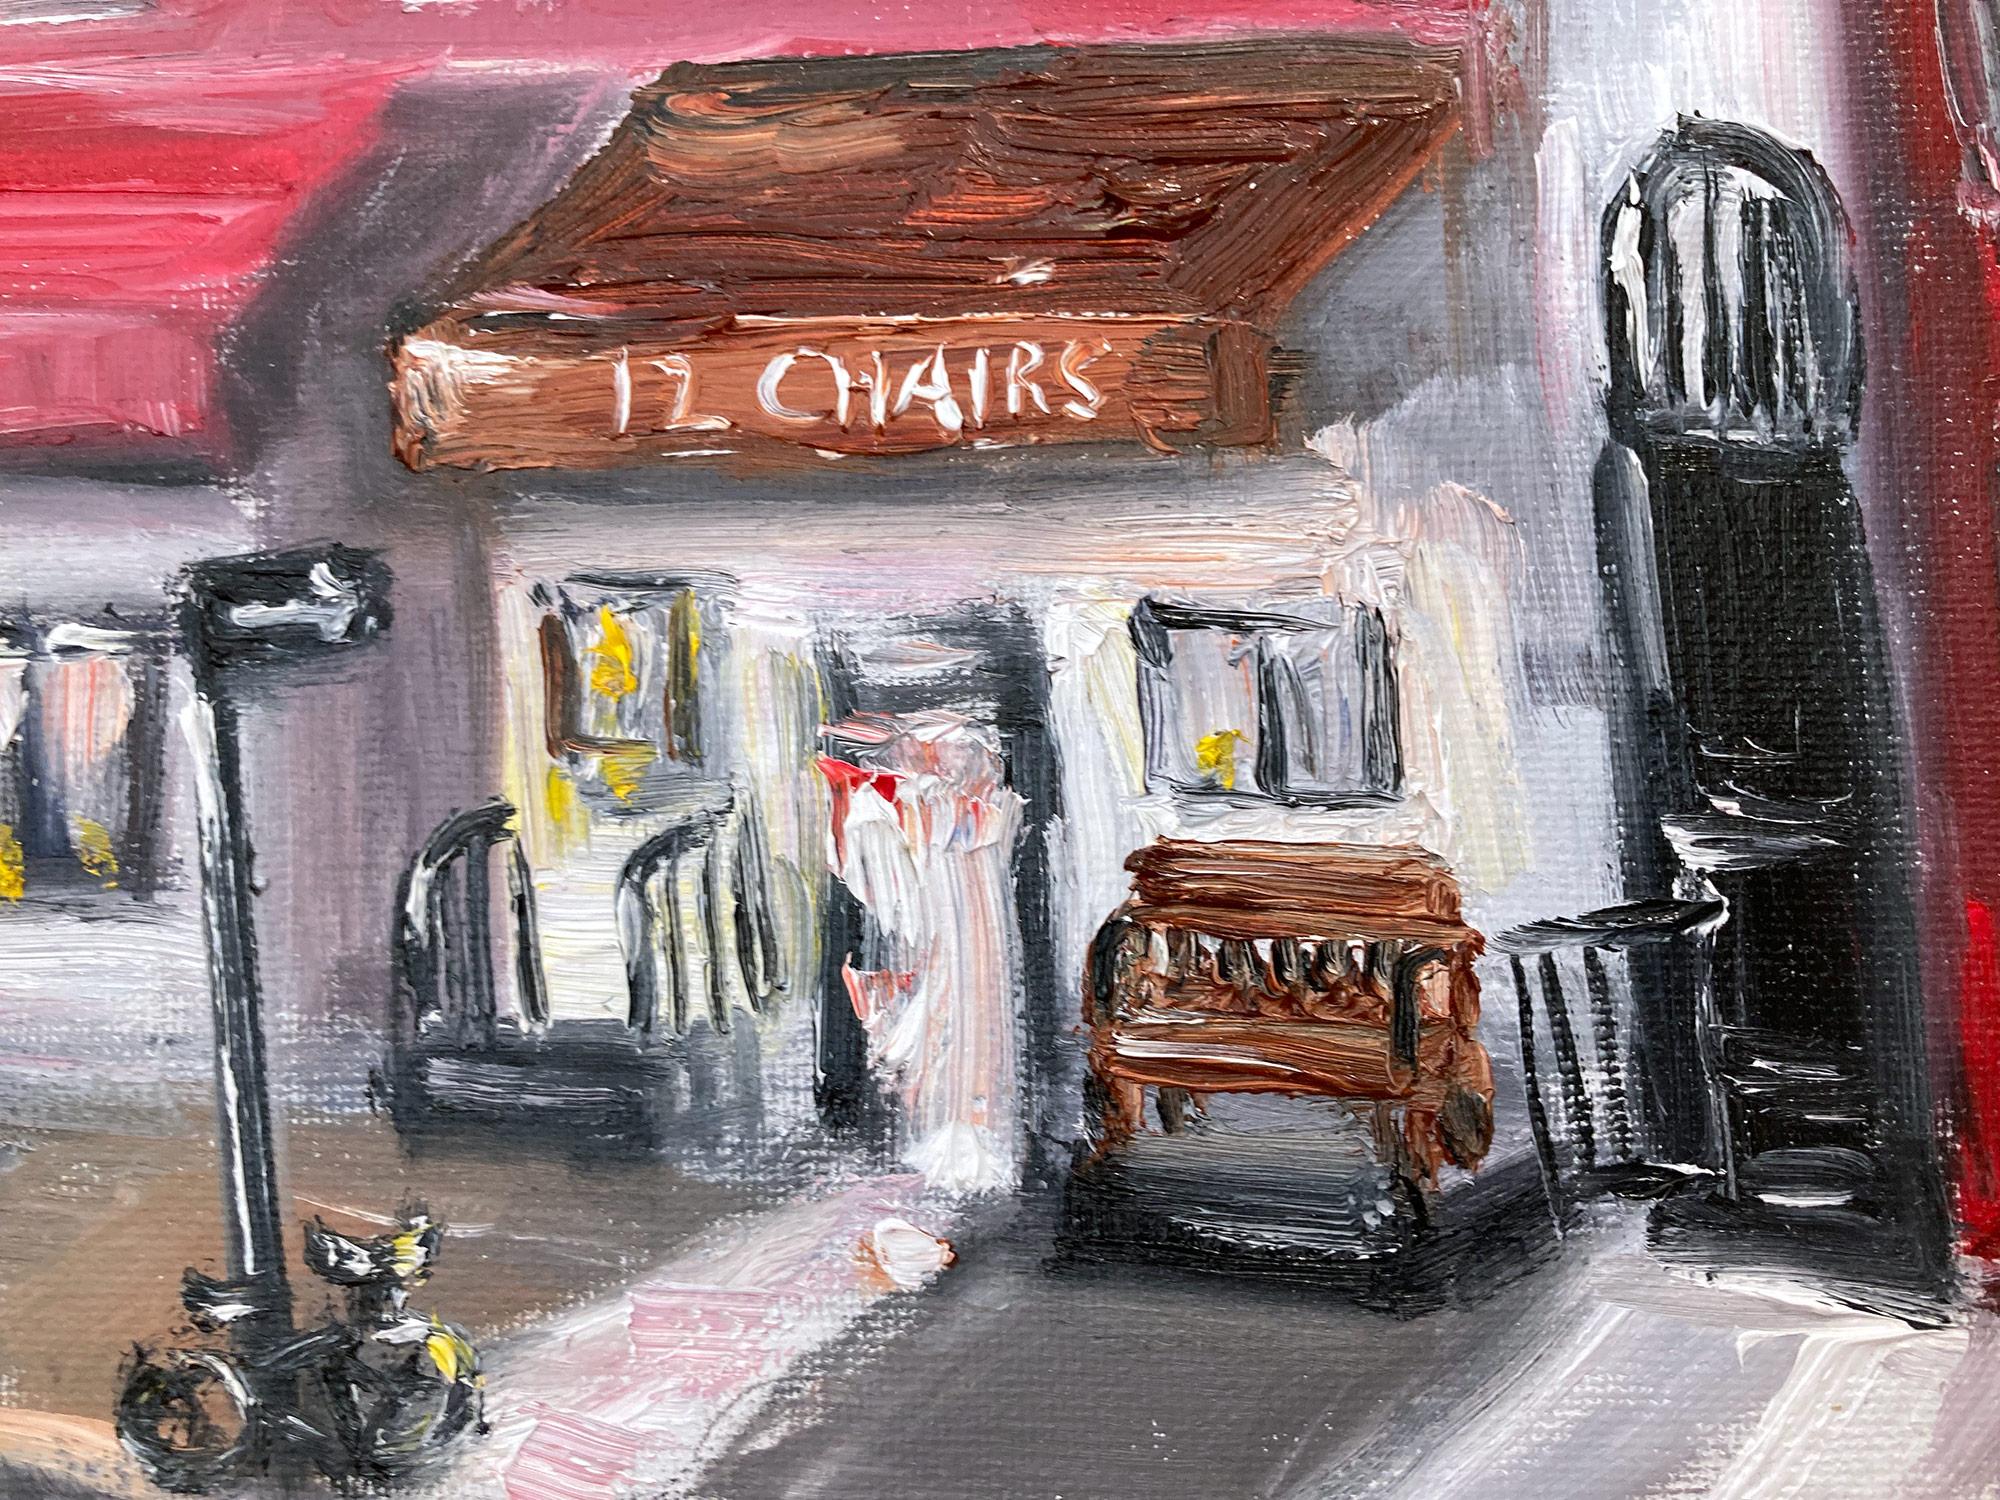 „Brunch at 12 Chairs“, Plein Air Restaurant, Ölgemälde in Soho, New York City (Amerikanischer Impressionismus), Painting, von Cindy Shaoul